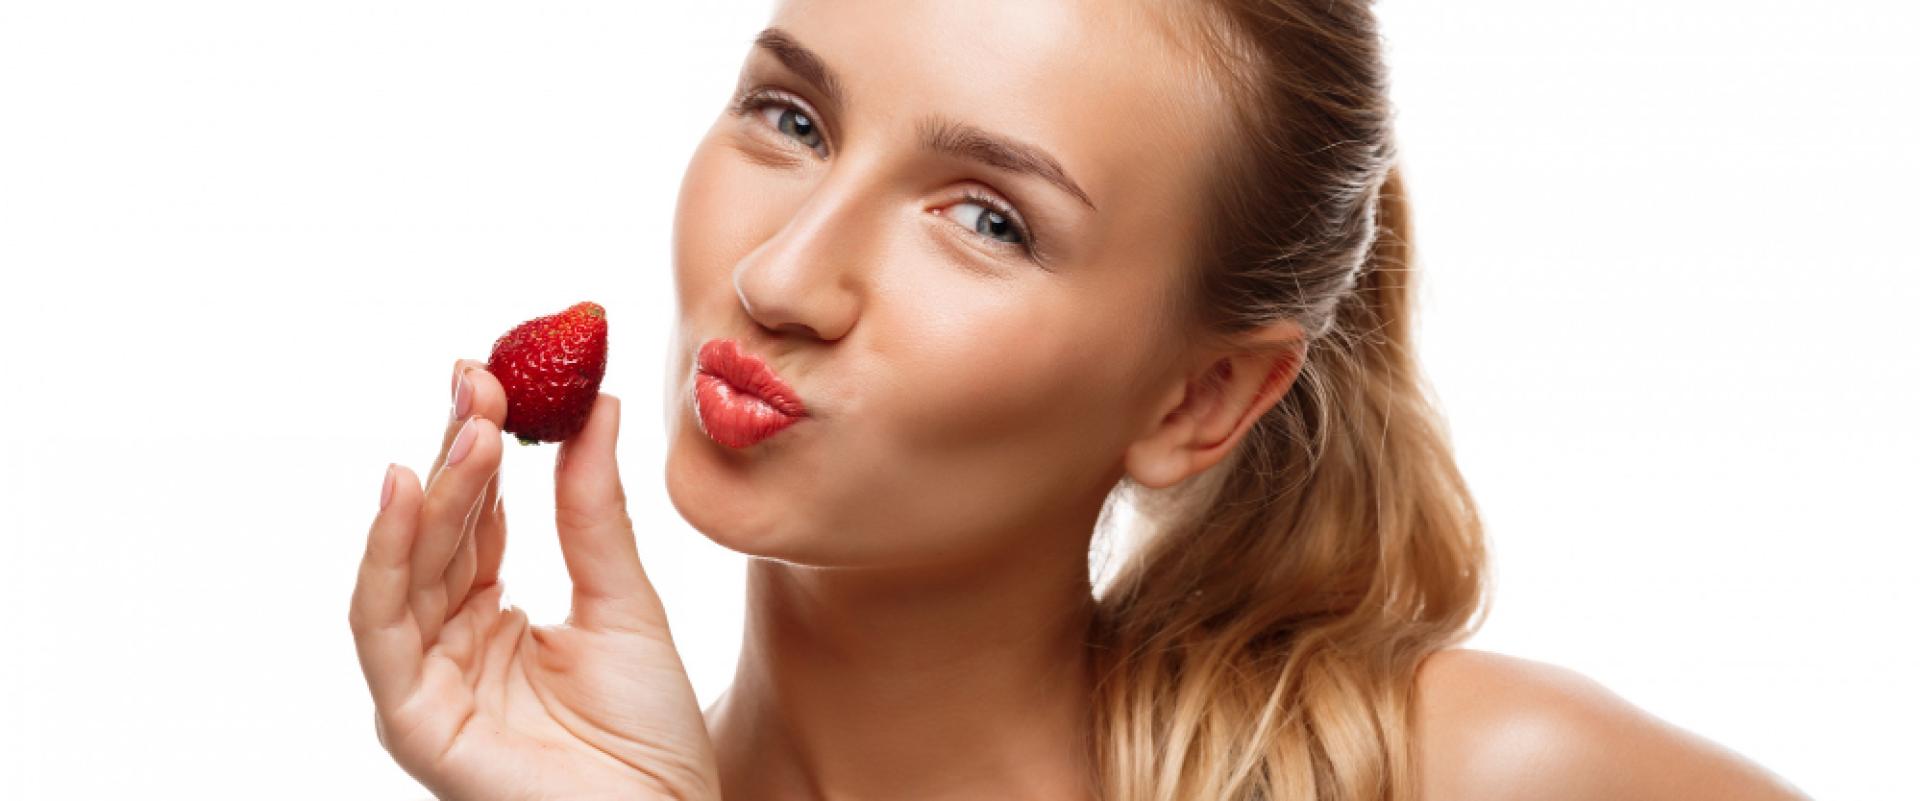 Jak wykonać strawberry make-up? Kosmetyki, których potrzebujesz